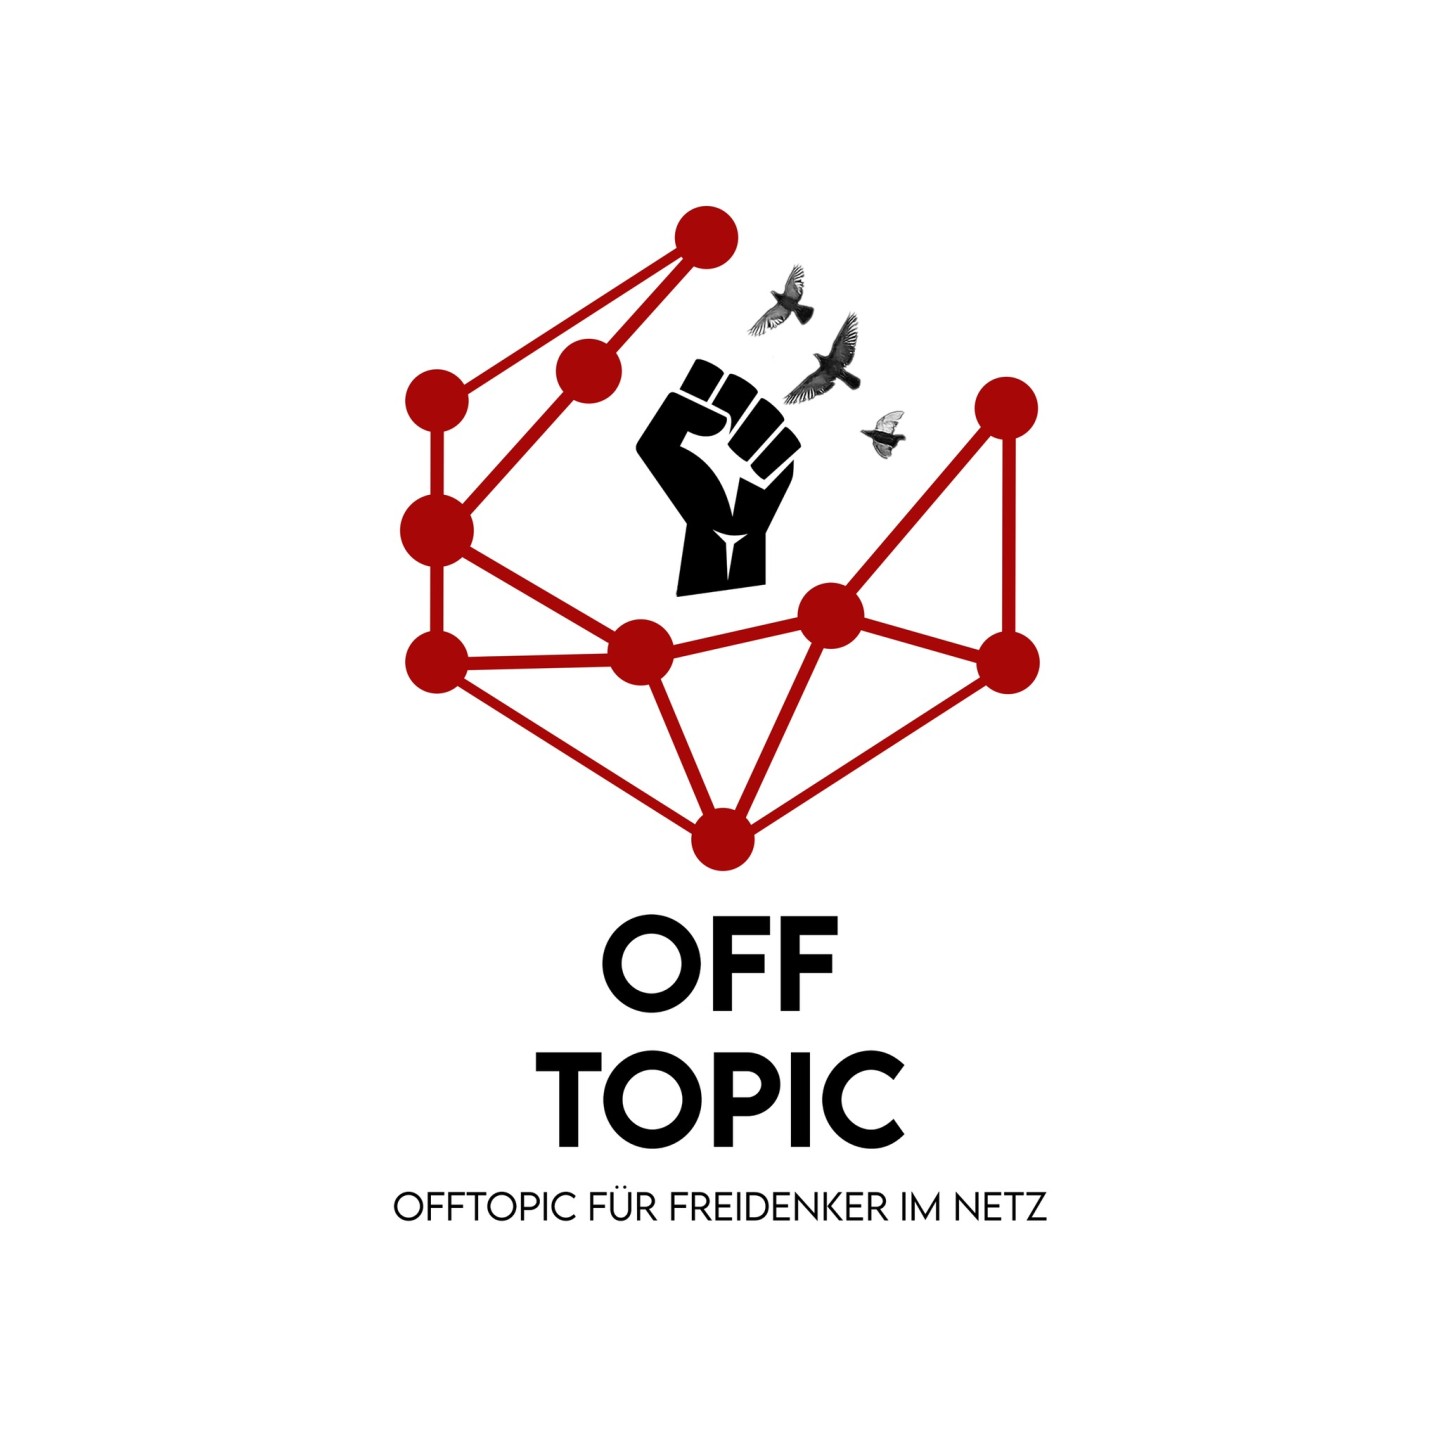 OffTopic 24find auf Telegram als Gruppe zum Disskutieren